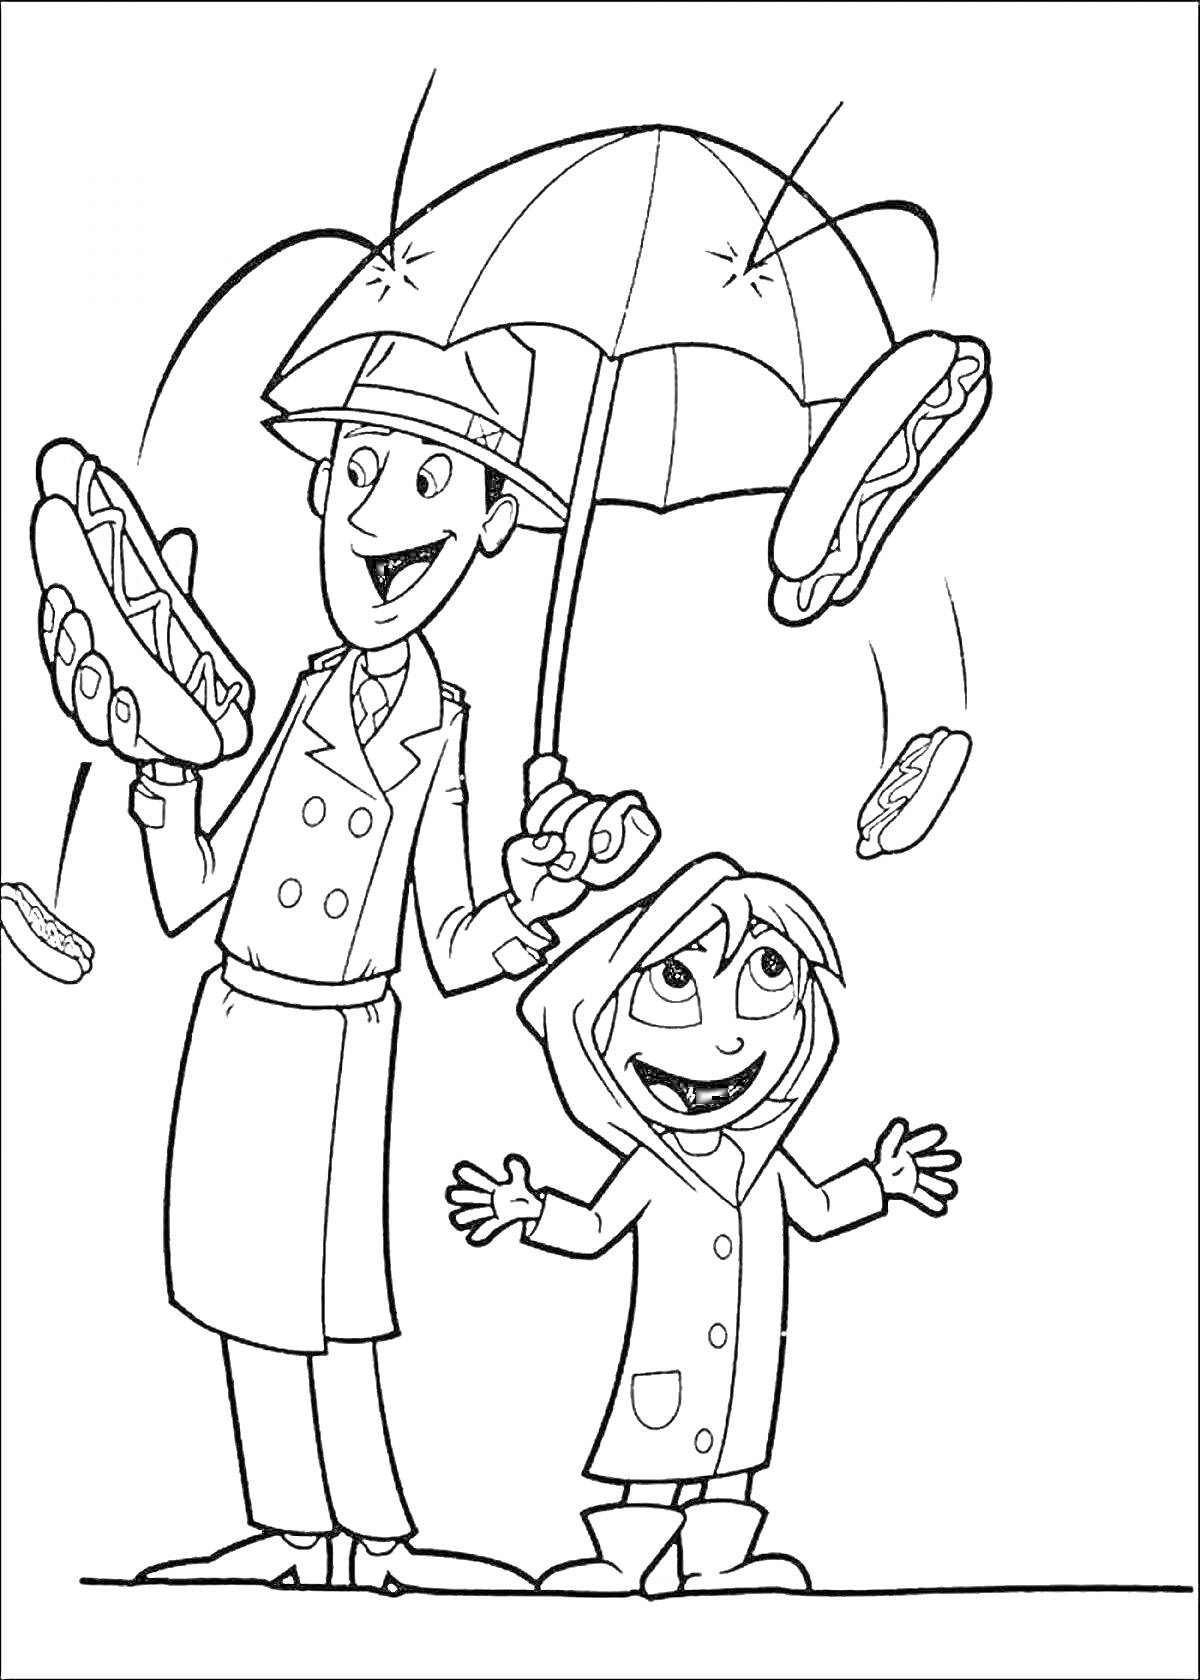 Раскраска Человек и ребенок в плащах под зонтом с падающими хот-догами